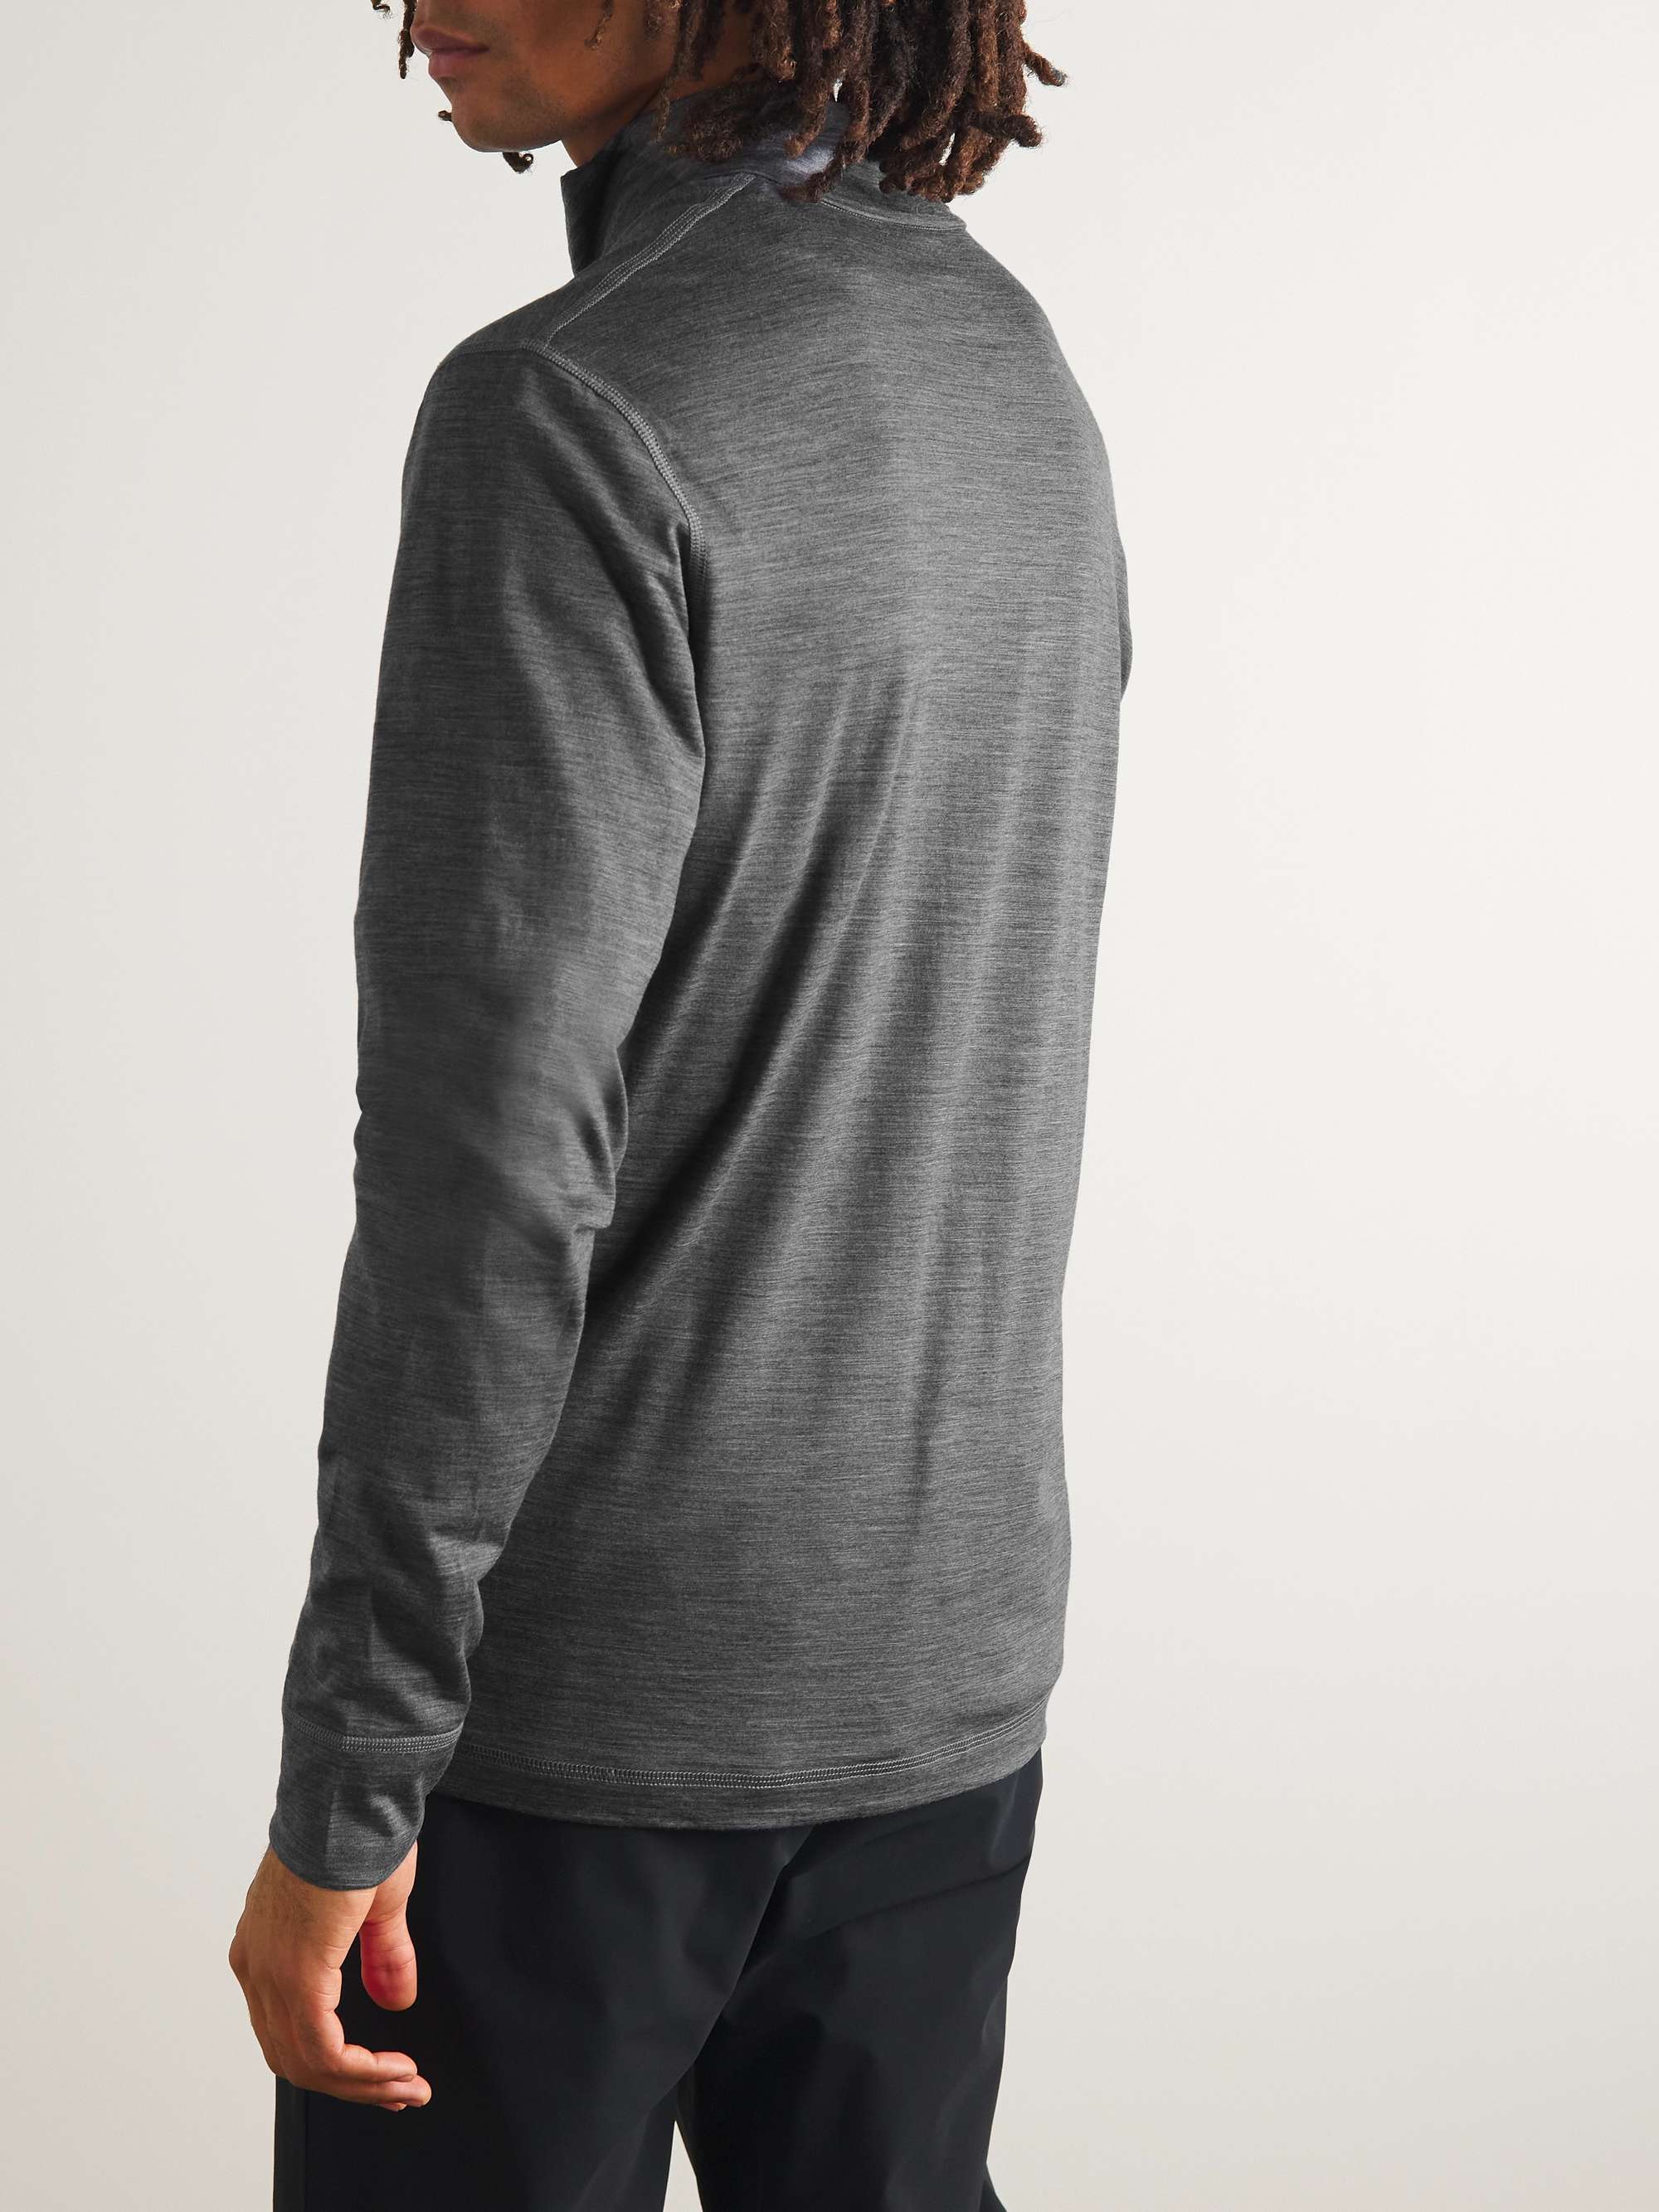 SUNSPEL Merino Wool Half-Zip Sweatshirt